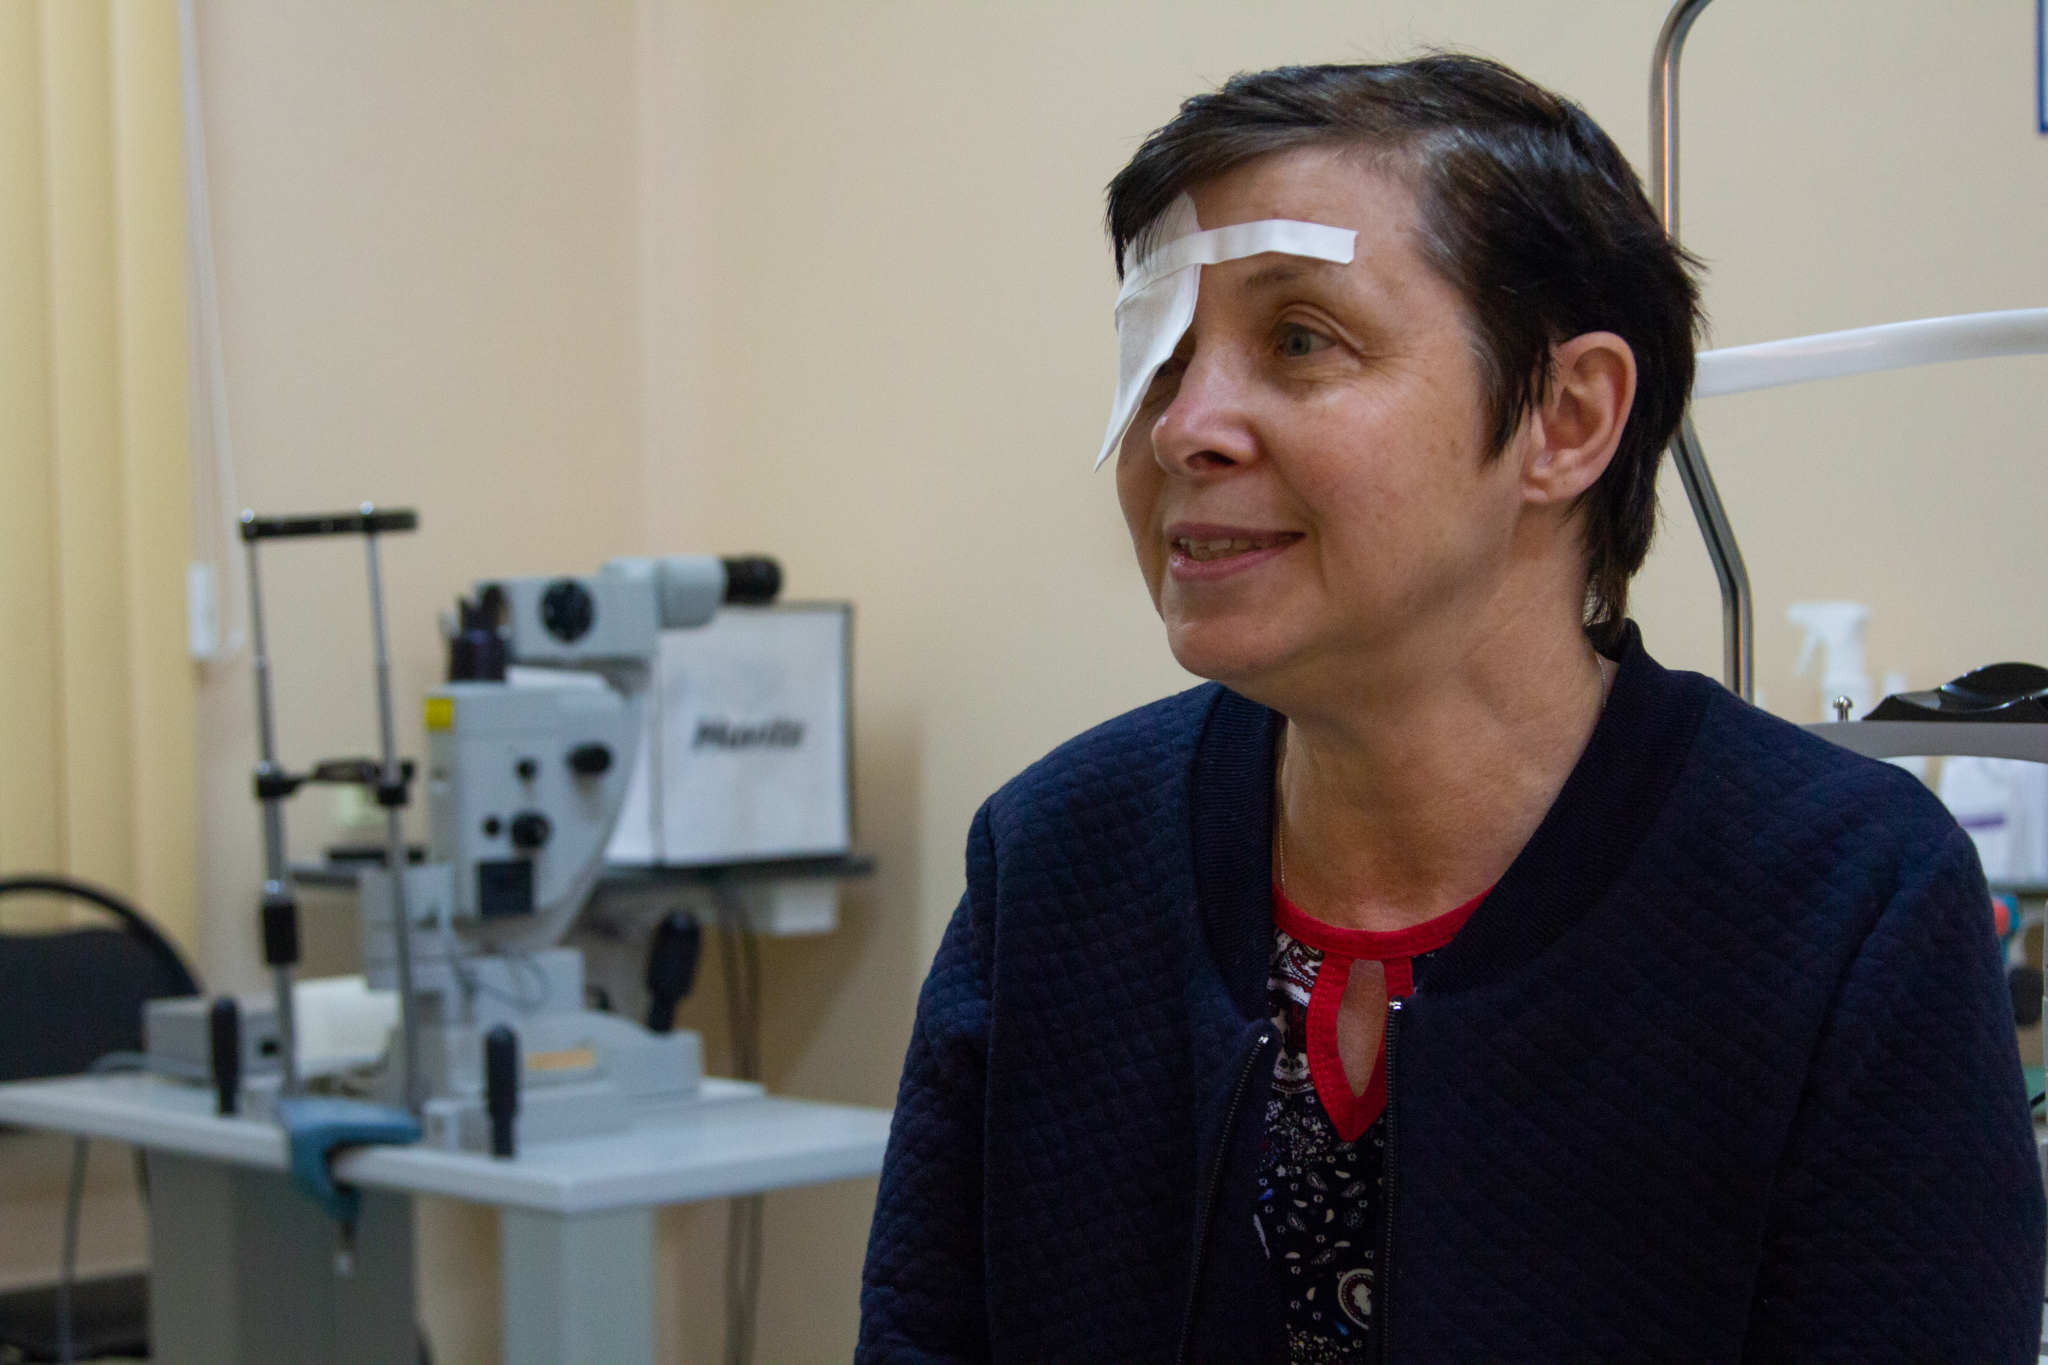 «Я смогу видеть как раньше»: кировские врачи вернули зрение женщине